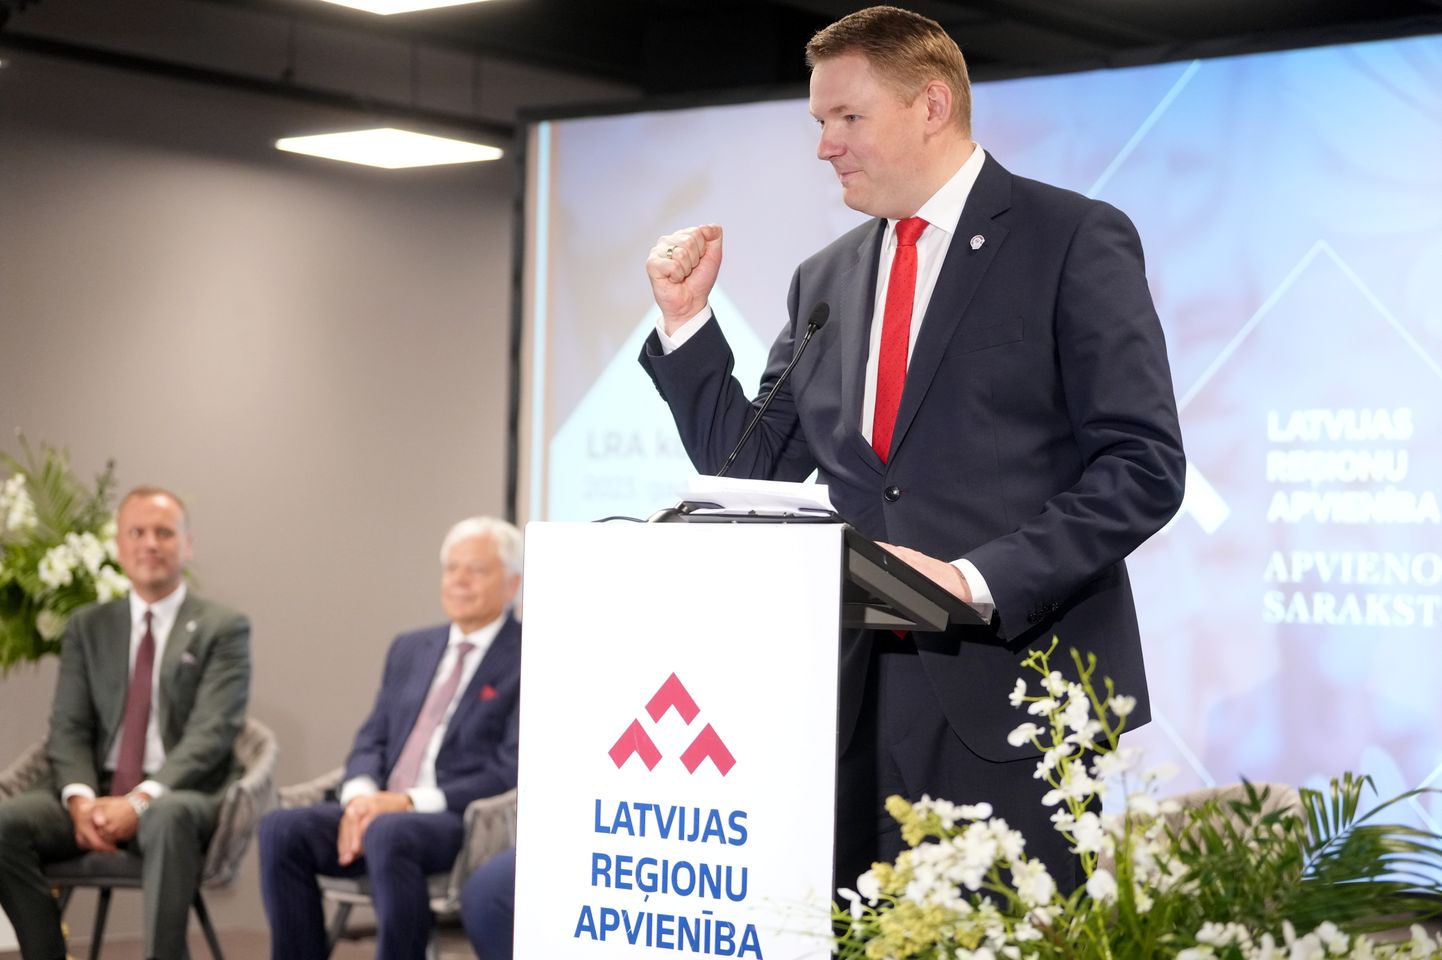 Latvijas Reģionu Apvienība valdes priekšsēdētājs, Saeimas priekšsēdētājs Edvards Smiltēns piedalās Latvijas Reģionu Apvienības kongresā izstāžu centrā "Atta Centre".